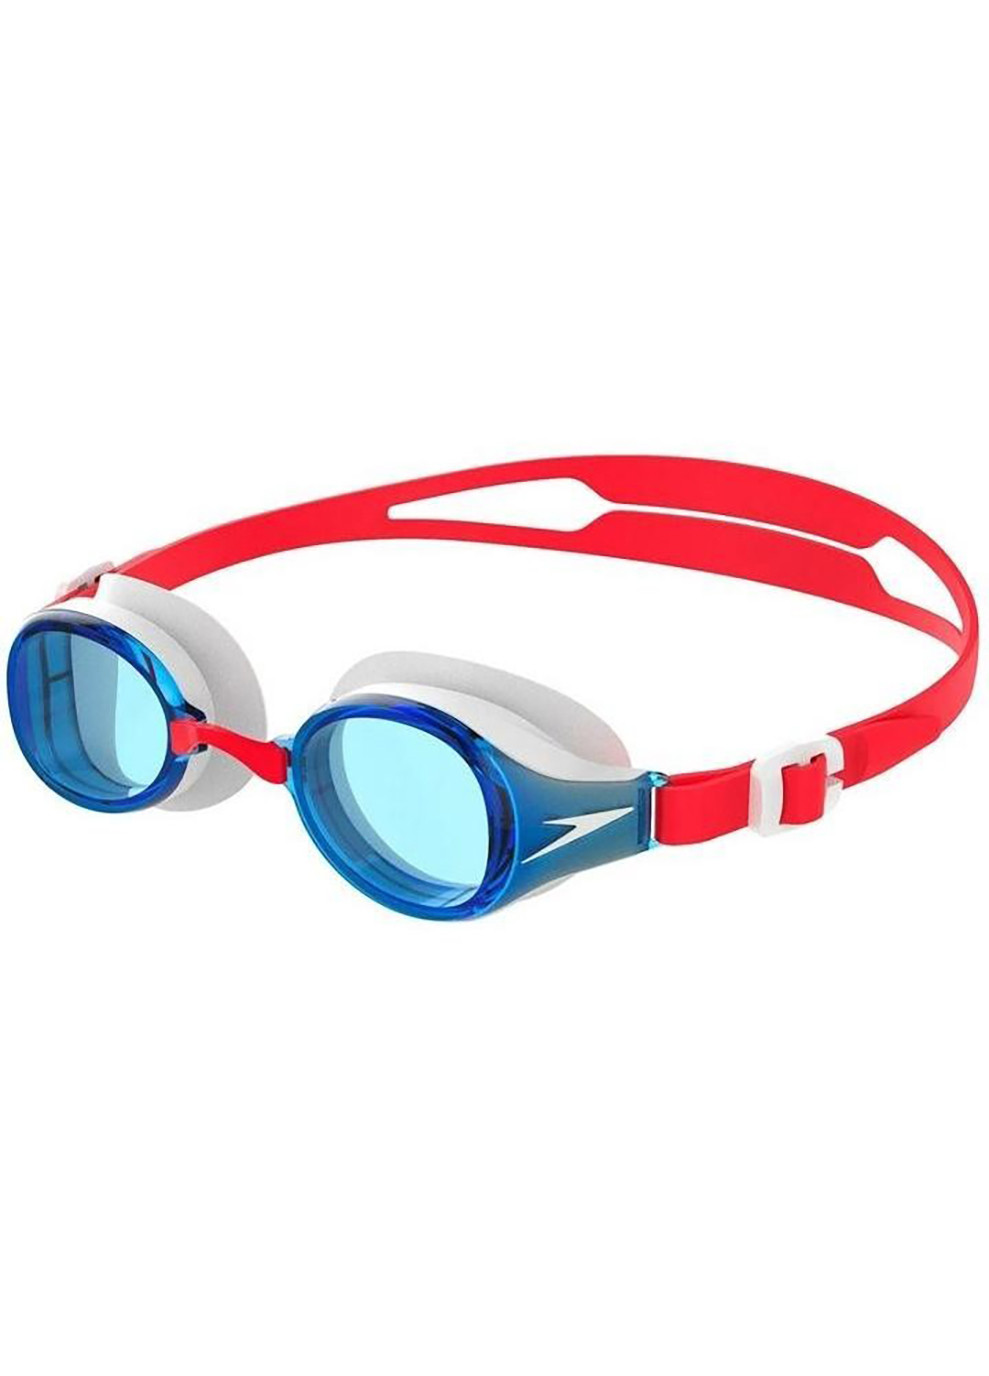 Очки для плавания HYDROPULSE GOG JU красный, голубой Speedo (260659195)